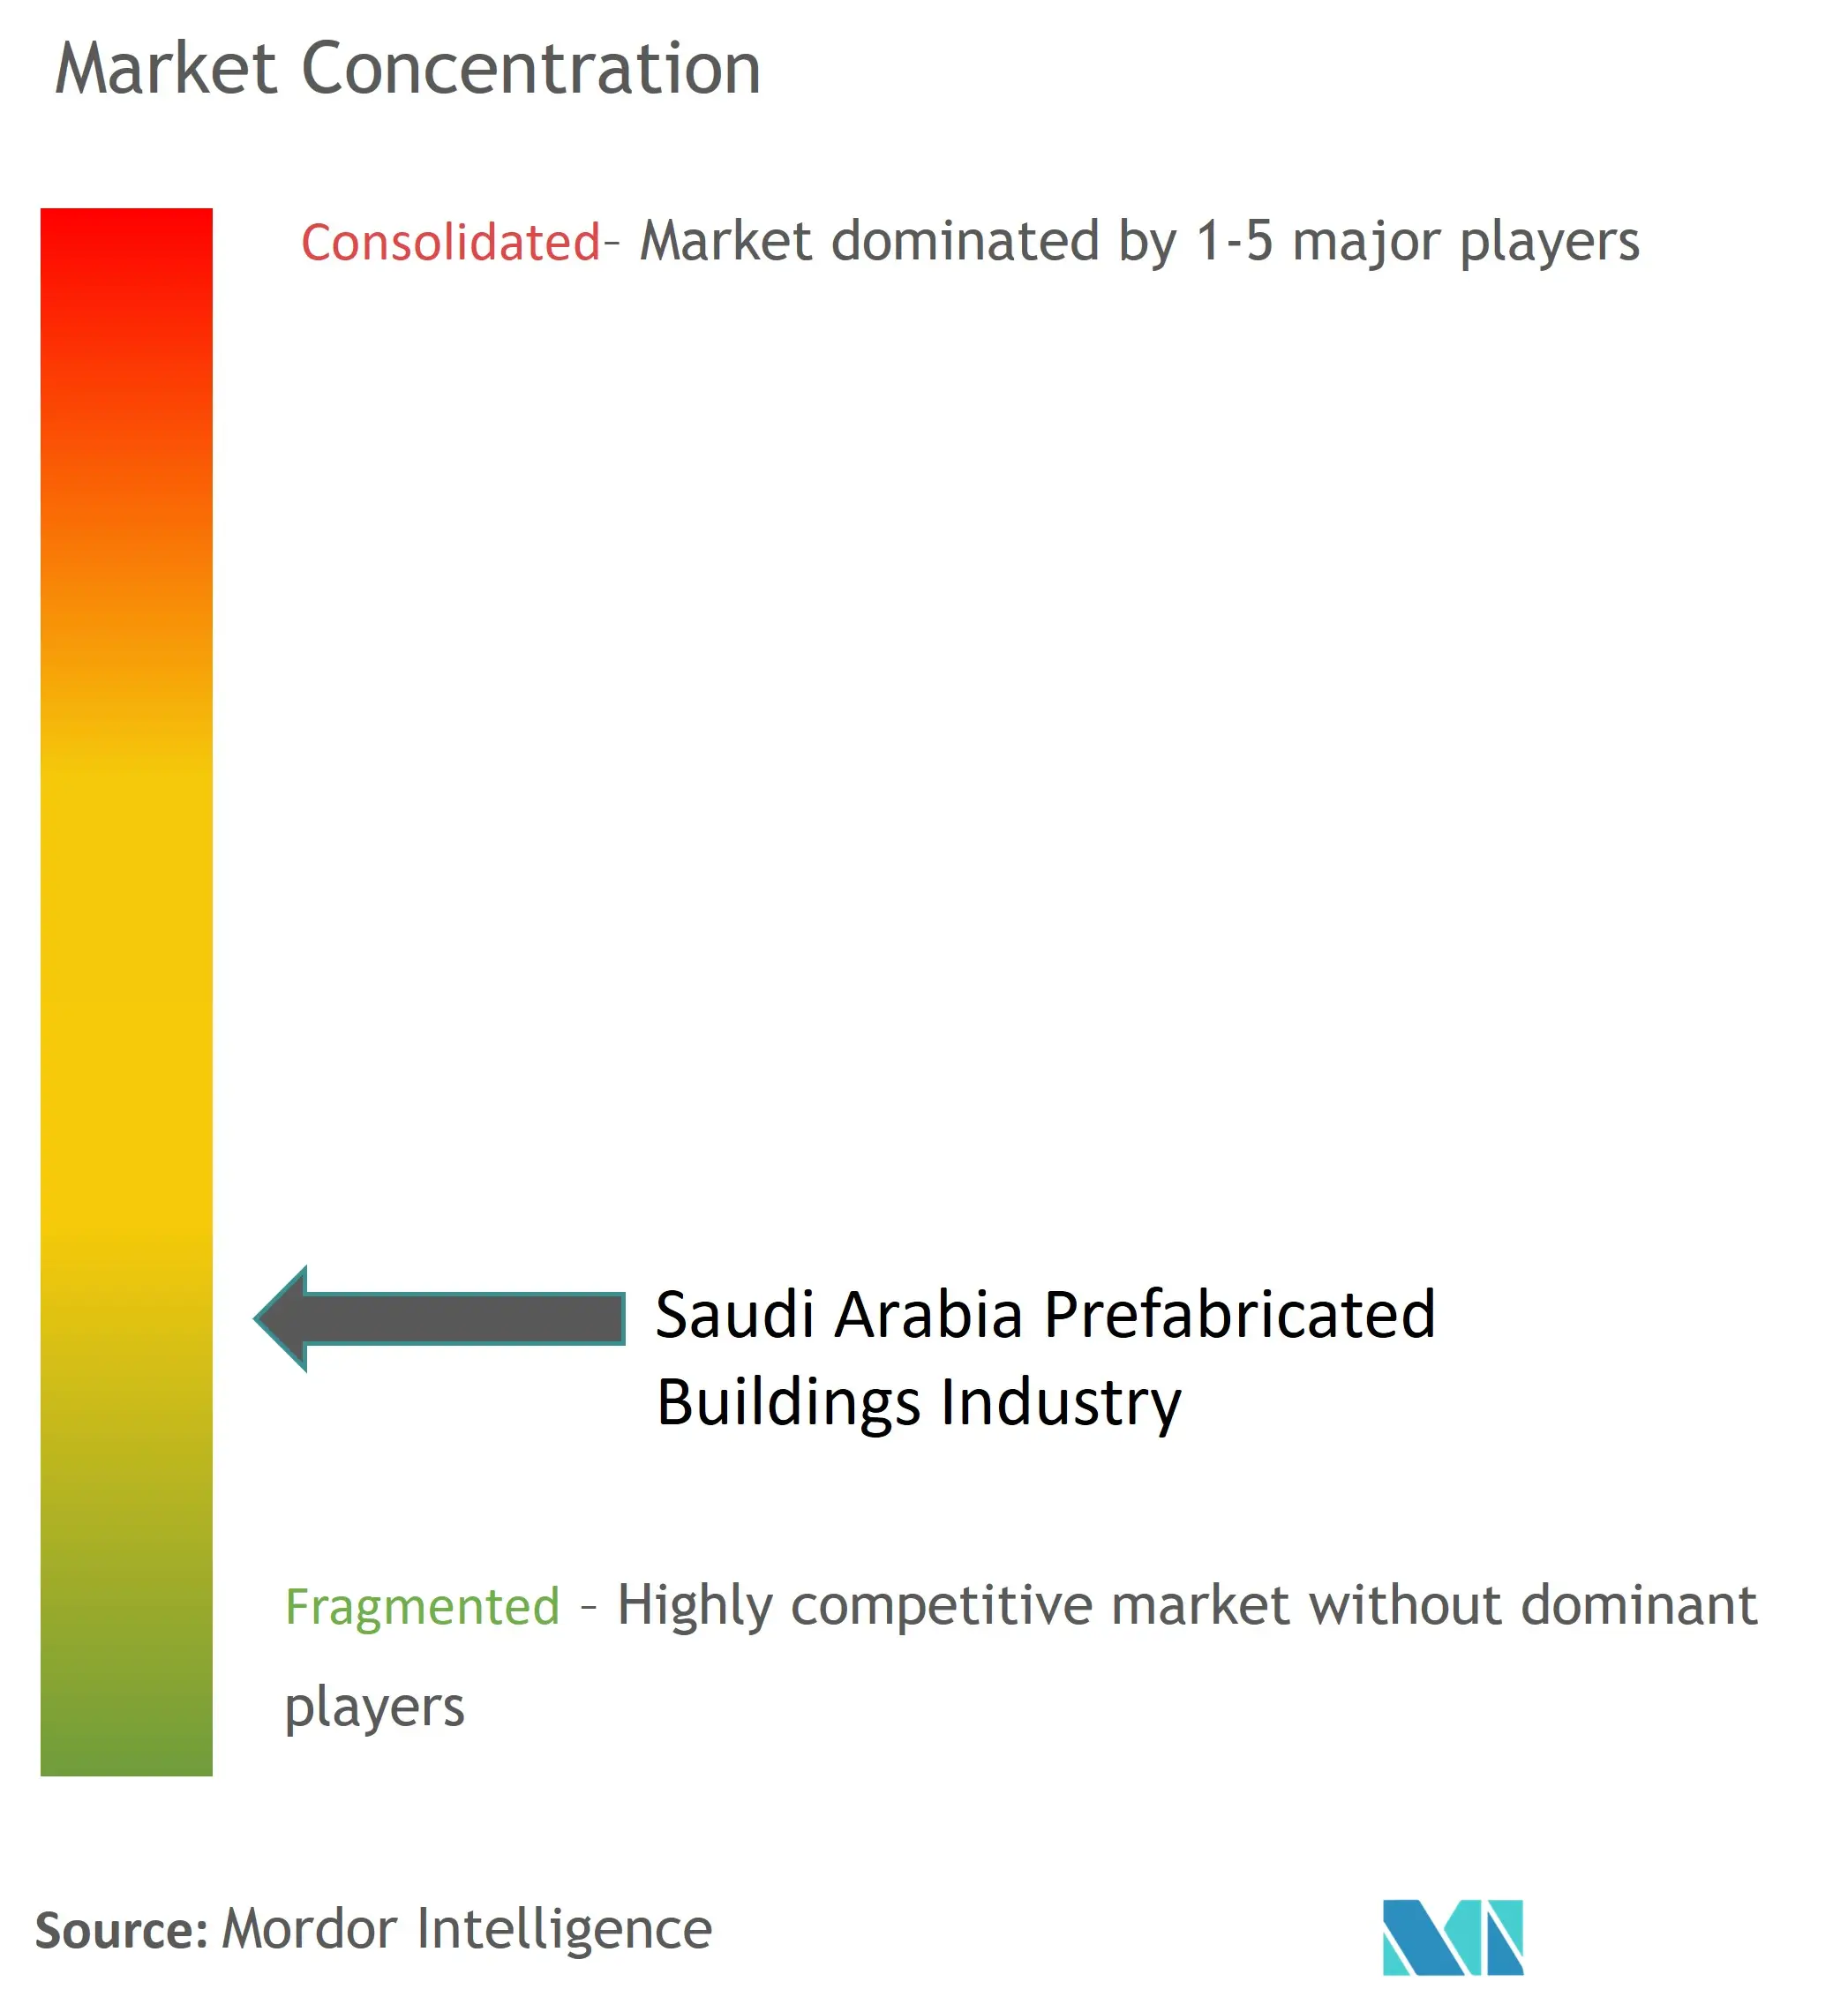 Marktkonzentration für vorgefertigte Gebäude in Saudi-Arabien